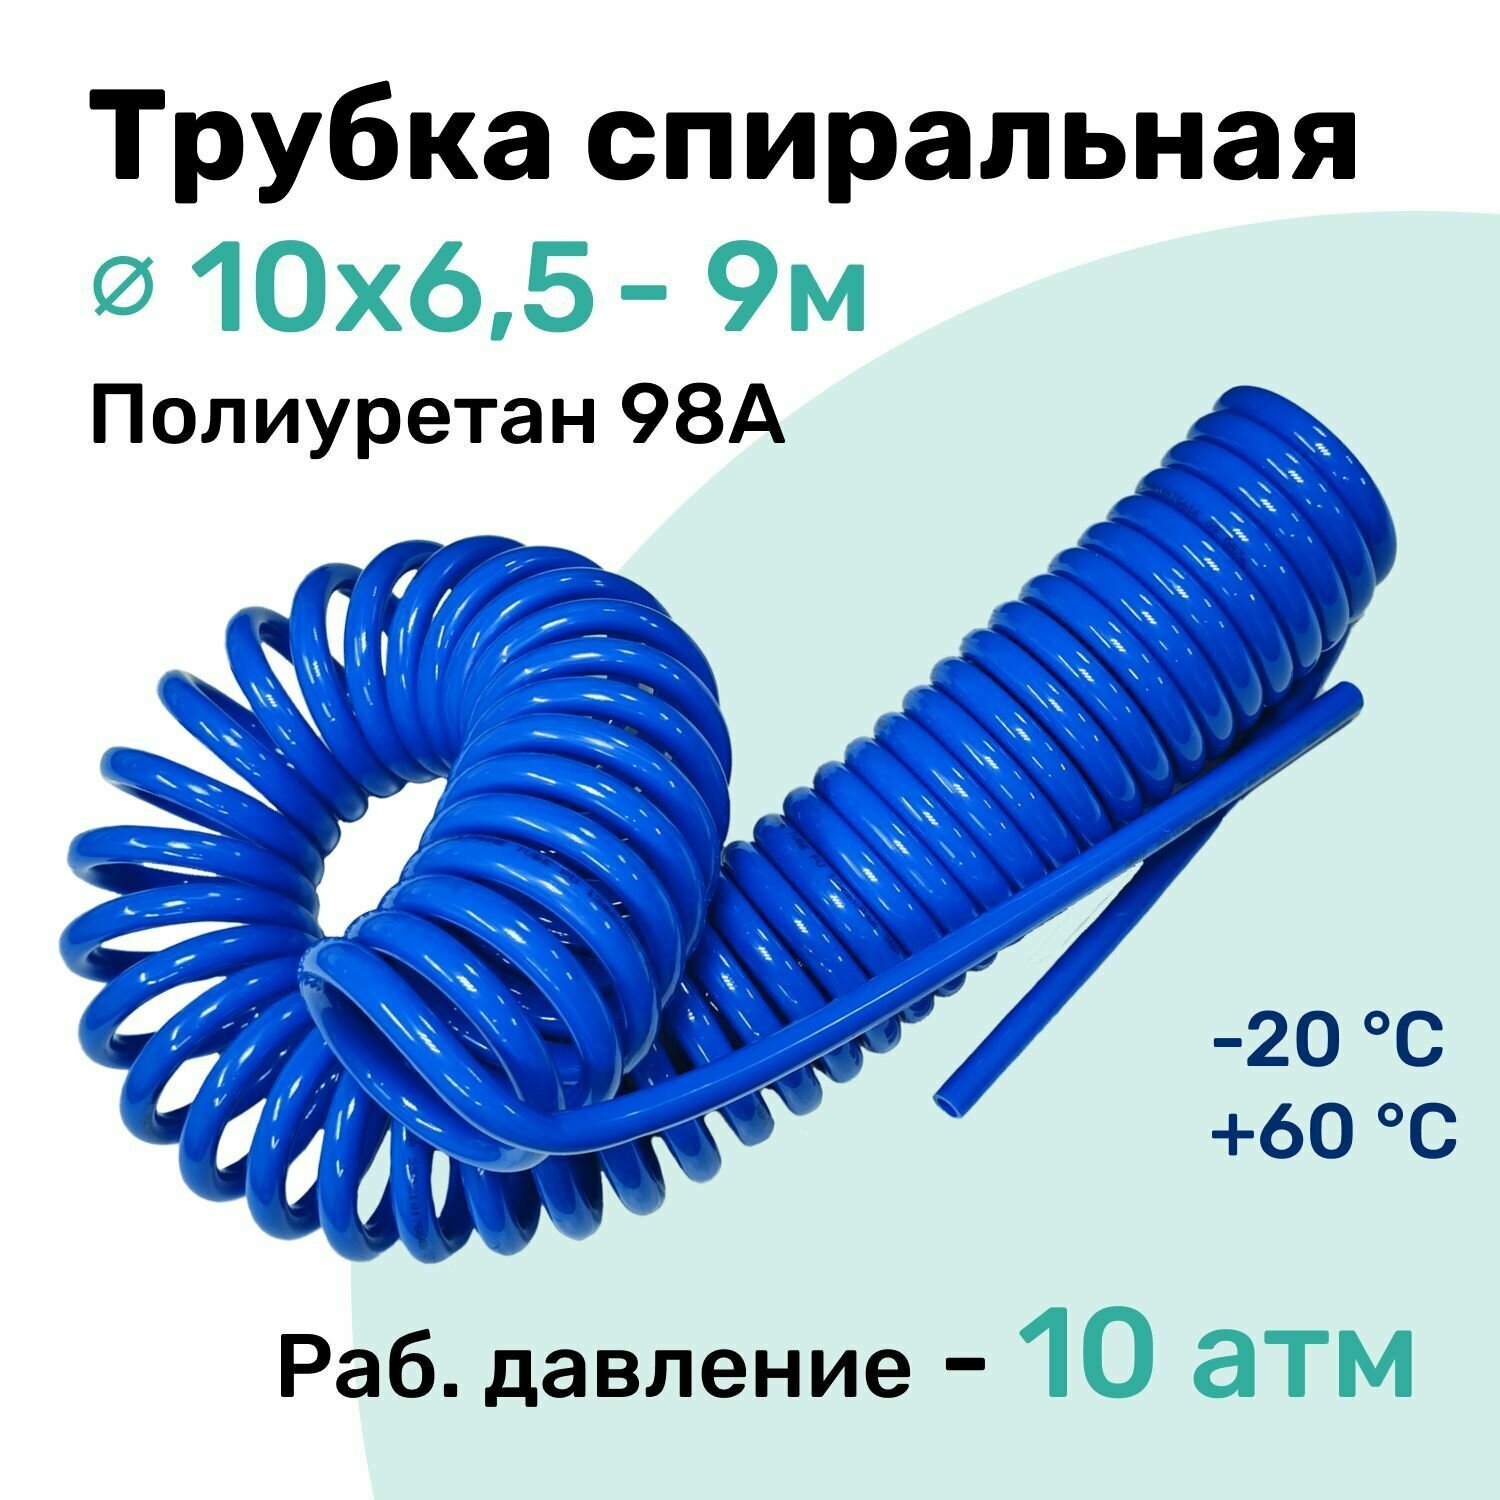 Пневмотрубка спиральная 10х6,5мм, полиуретановая PU98A, 9м, 10 атм, Синий, Шланг спиральный пневматический NBPT